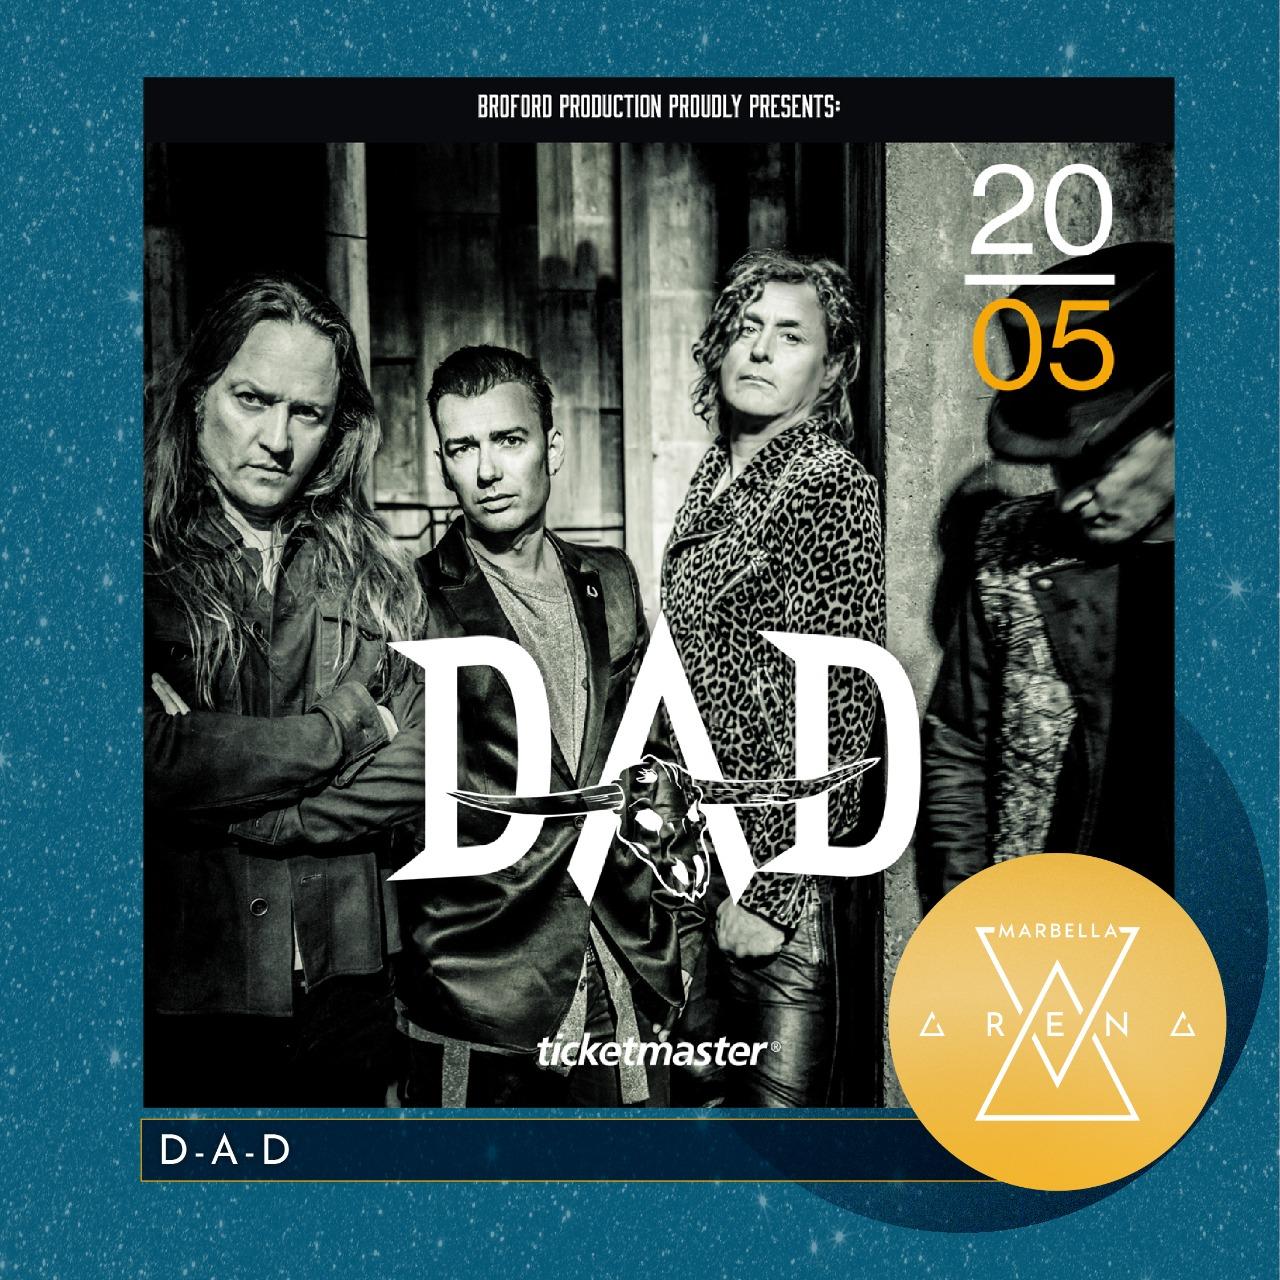 El conocido grupo de rock danés D-A-D actuará en Marbella Arena el próximo día 20 de Mayo